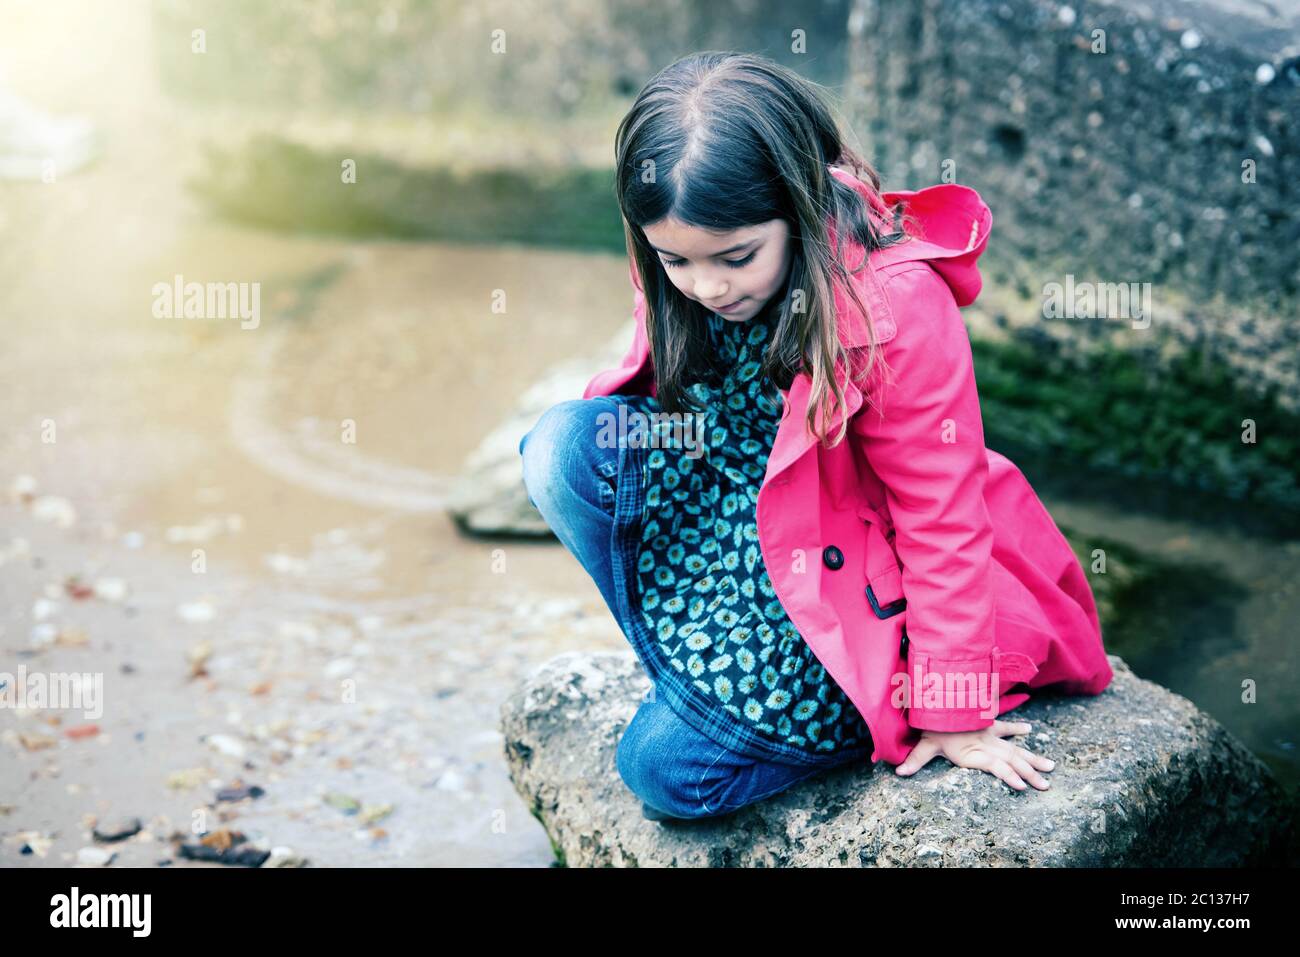 bella bambina che gioca su una roccia al bordo dell'acqua Foto Stock